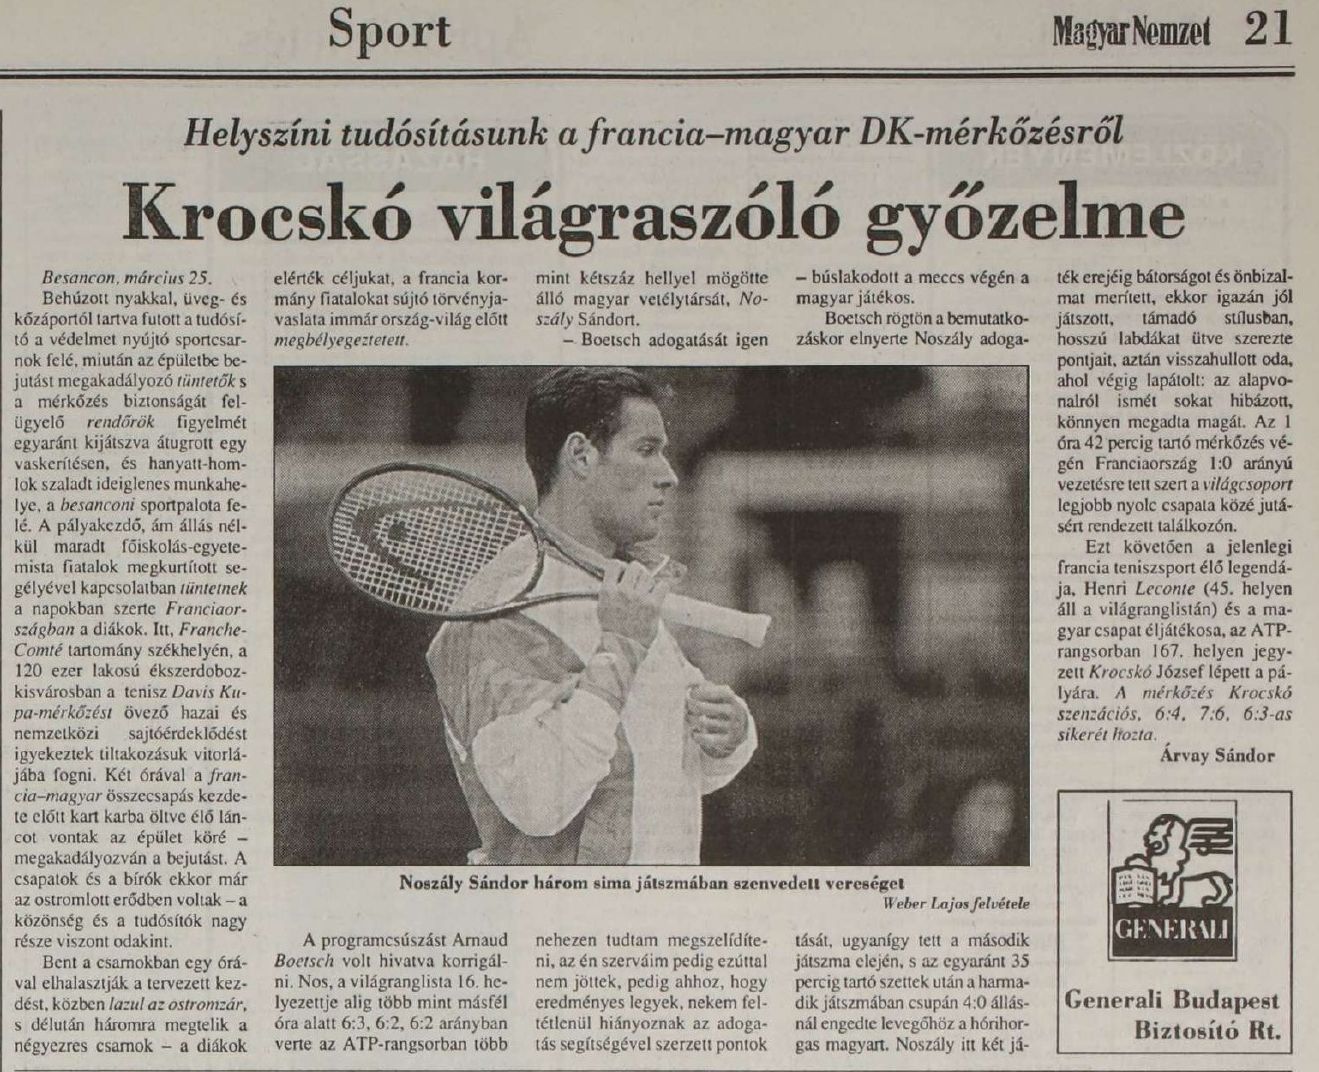 Besancon, 1994 - A Magyar Nemzet helyszíni tudósíása